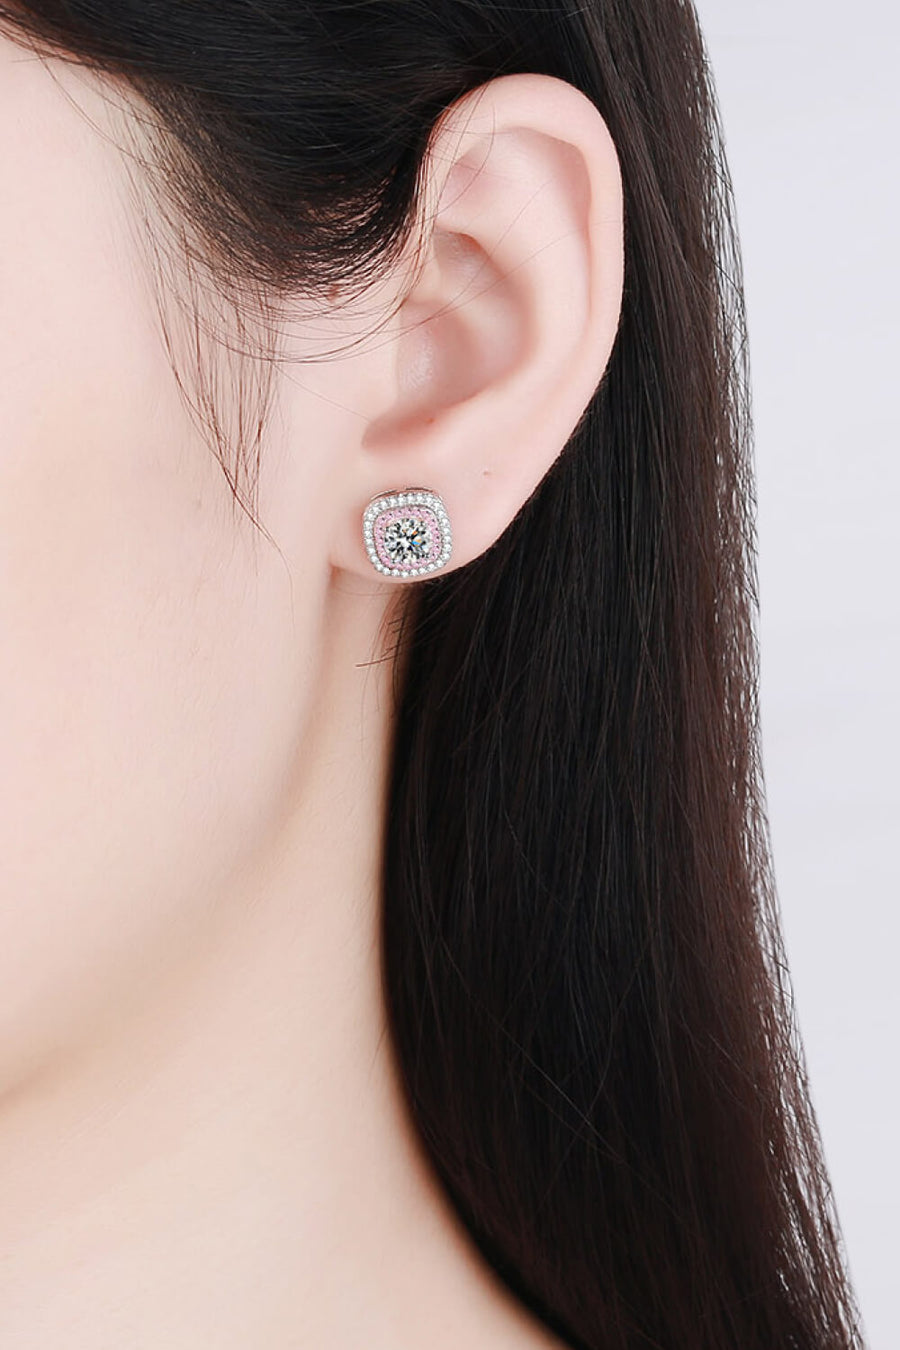 Best Diamond Earrings Jewelry Gifts for Women | 1 Carat Round Diamond Stud Earrings | MASON New York